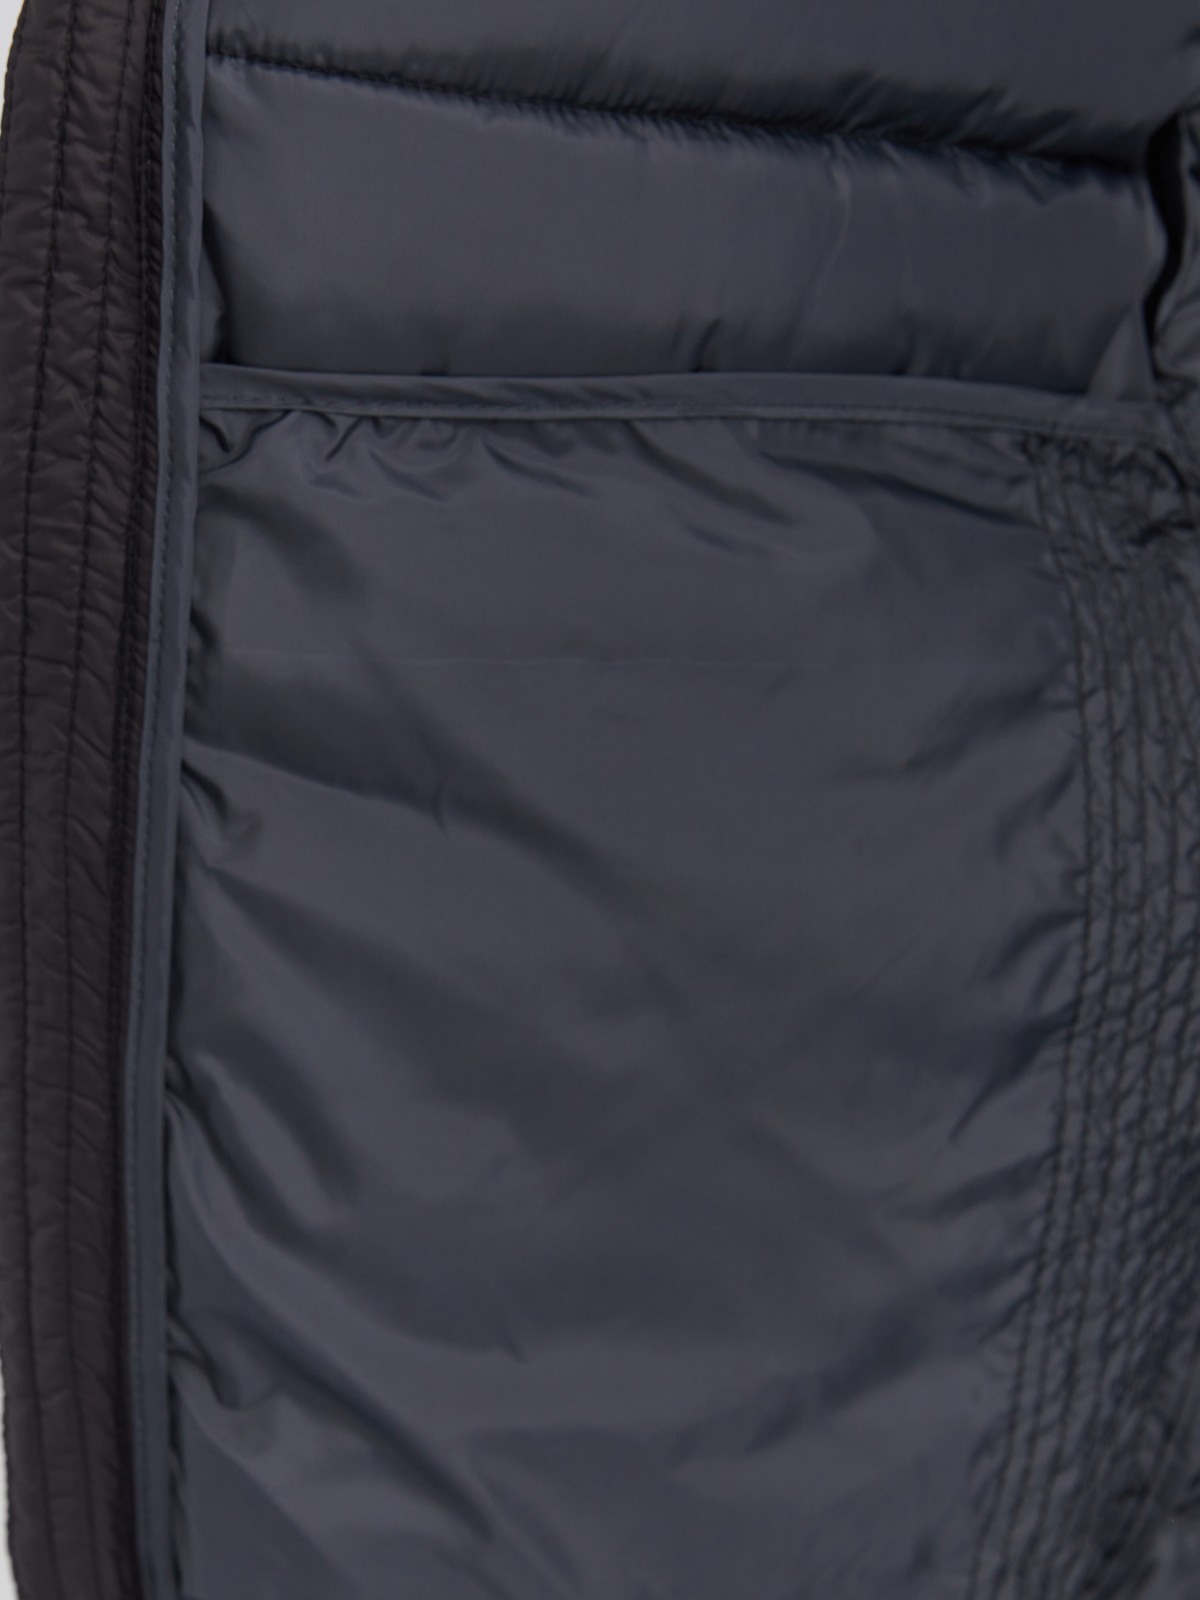 Лёгкая утеплённая стёганая куртка на молнии с воротником-стойкой zolla 013335102064, цвет черный, размер S - фото 5